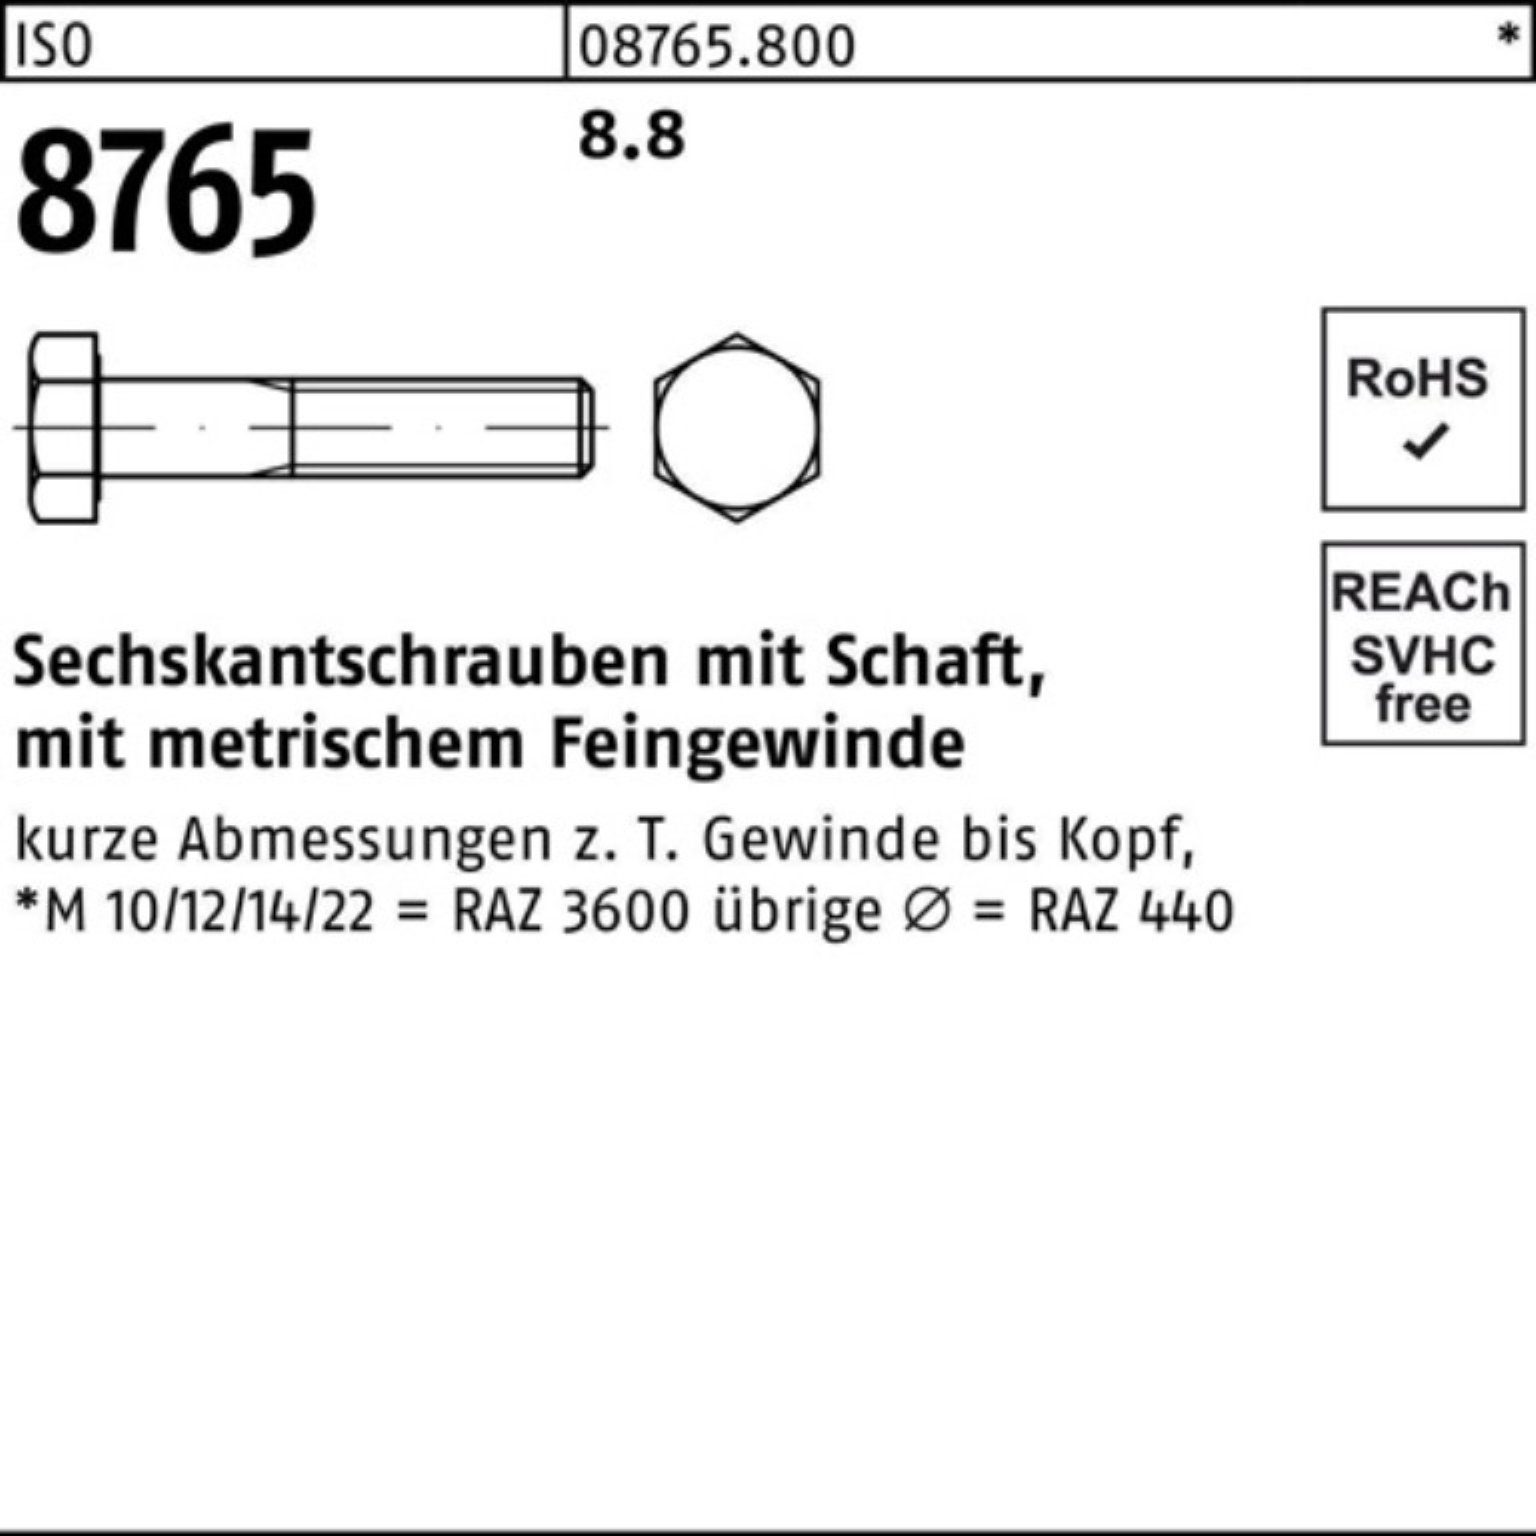 Reyher Sechskantschraube 100er Pack Sechskantschraube 100 8765 8.8 Schaft 35 M10x1x ISO Stück